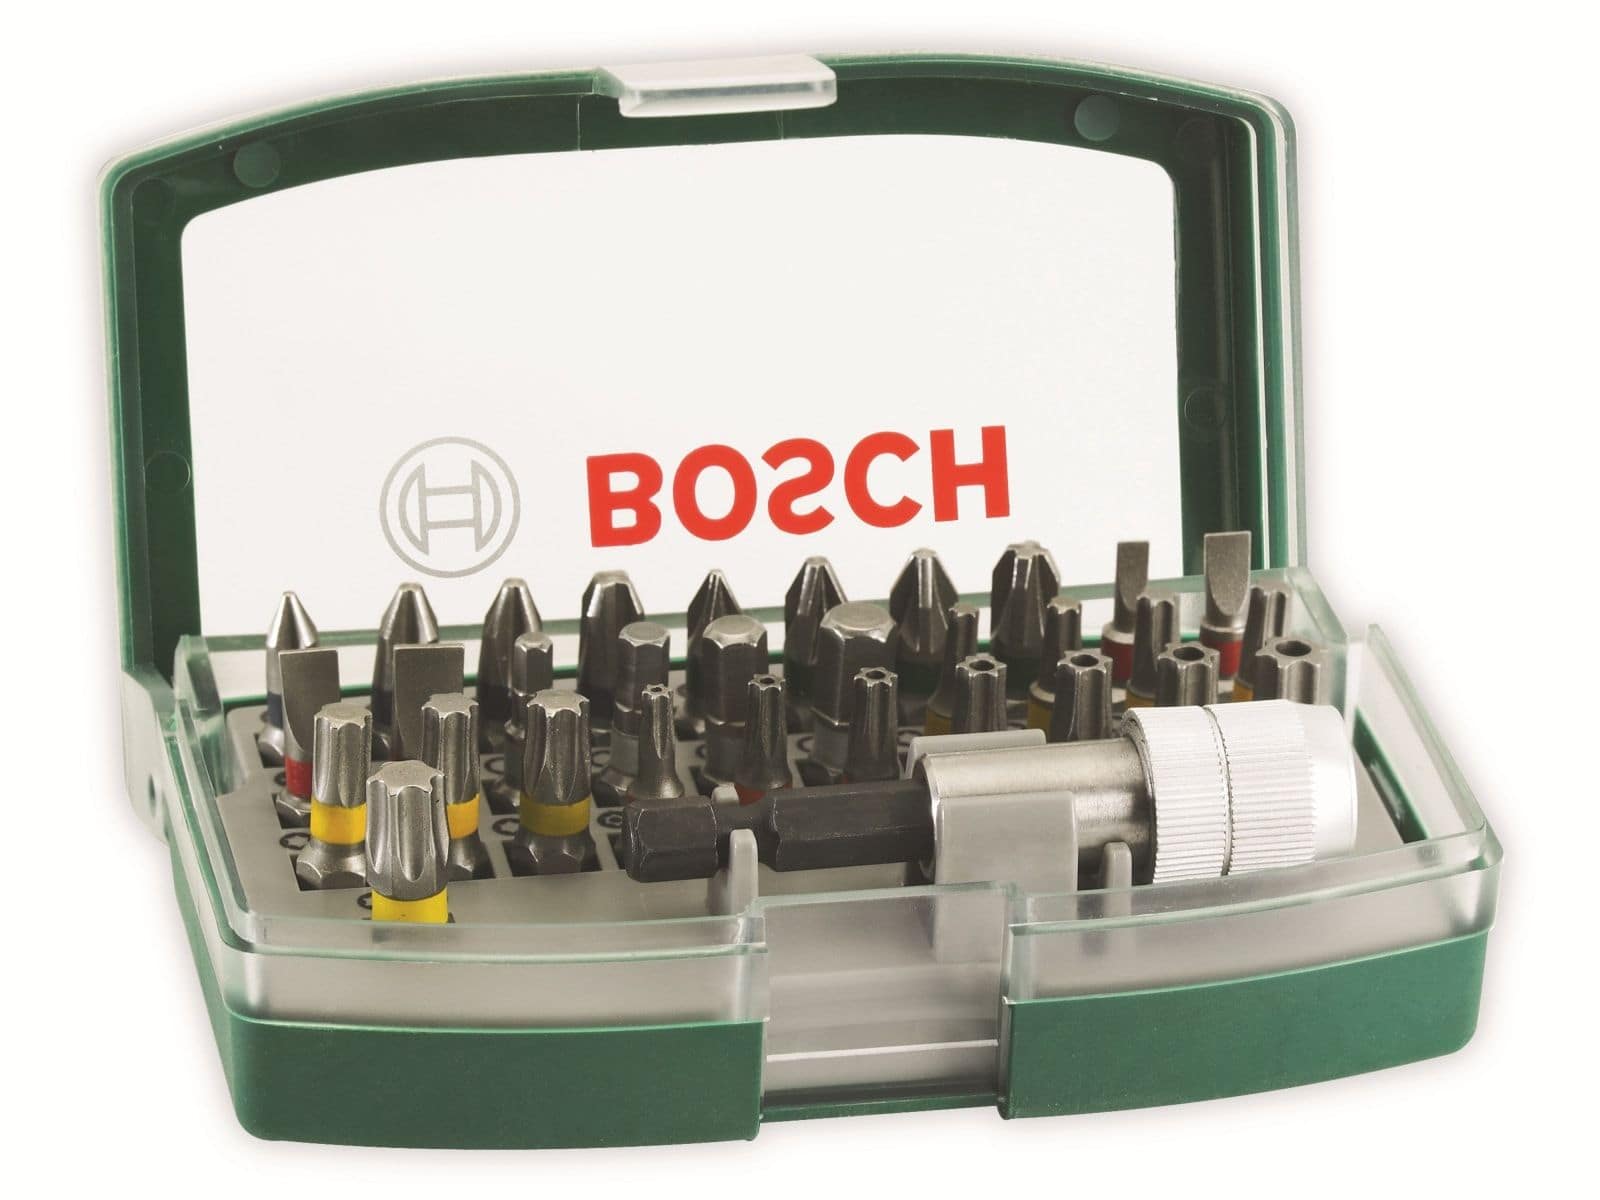 BOSCH Schrauberbit-Set, 32-teilig mit Farbcodierung von Bosch